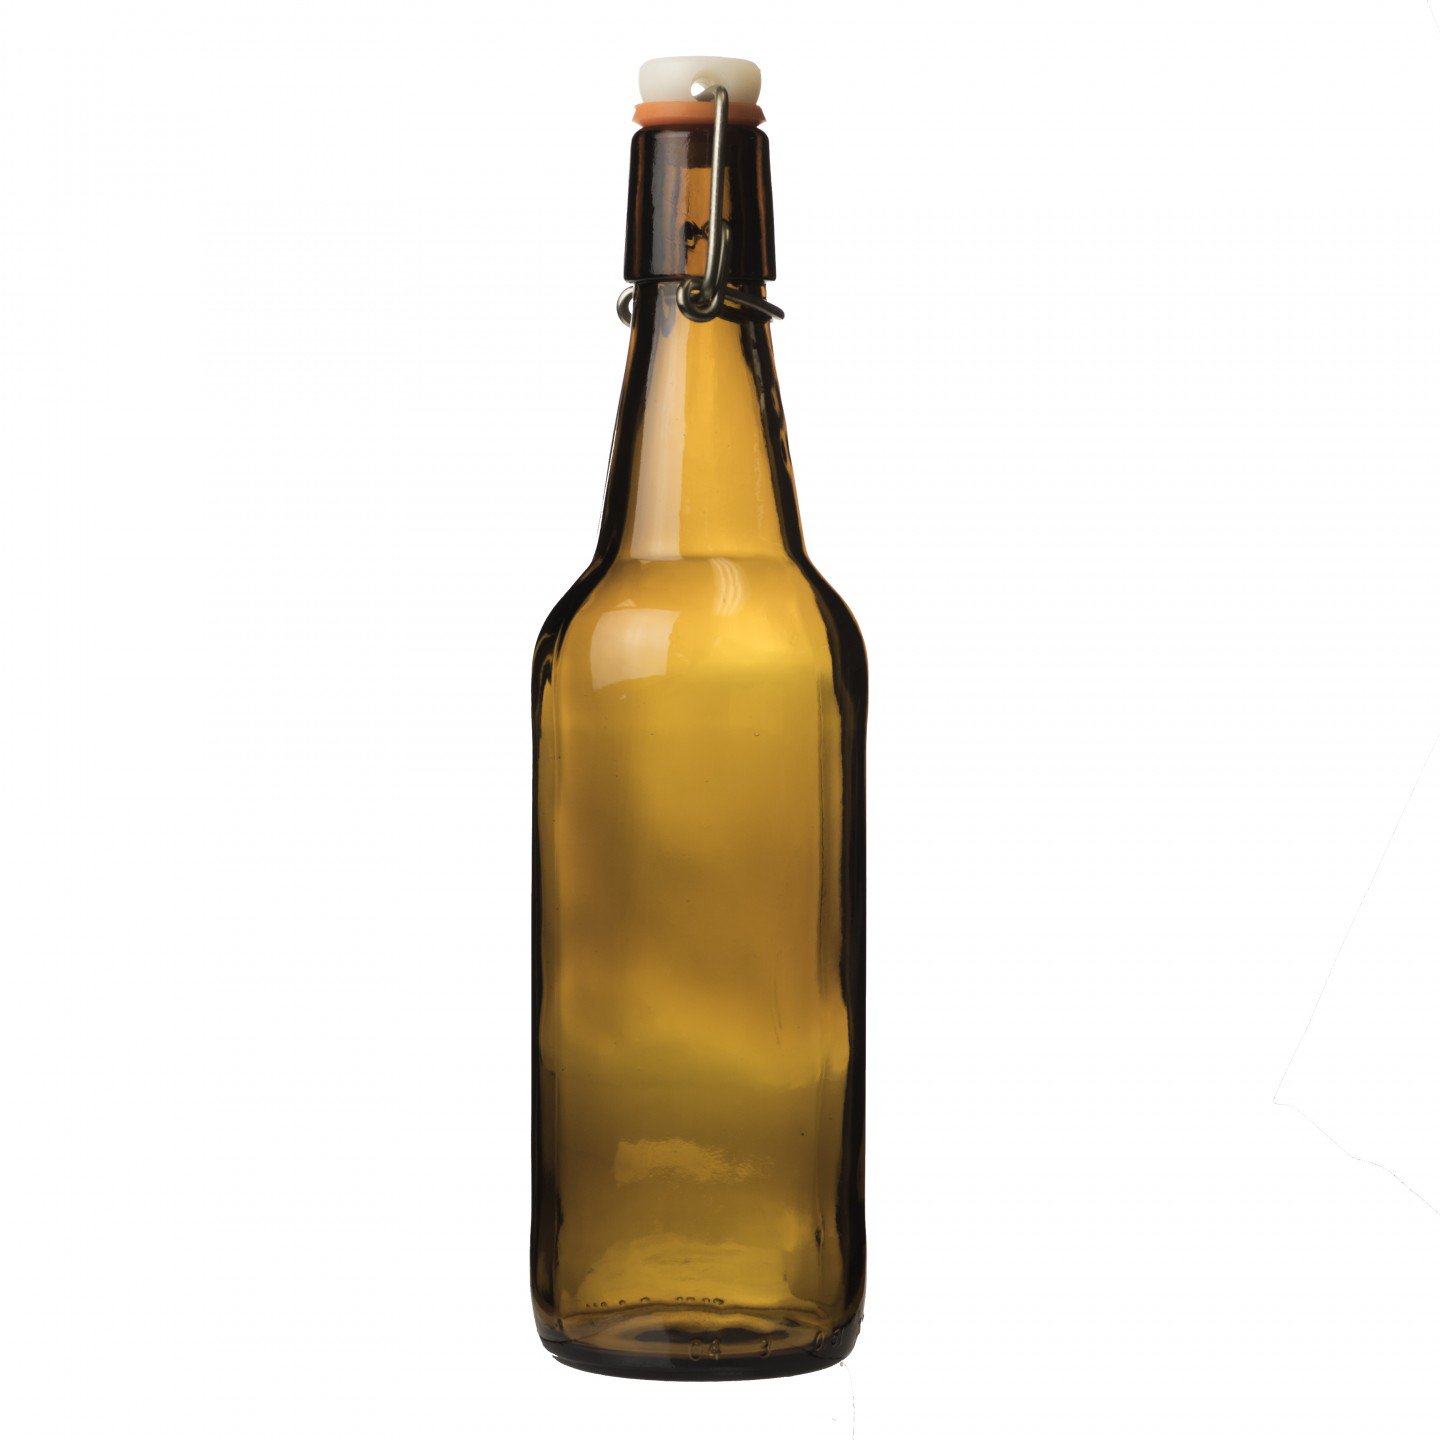 Image of Grolsch-style Flip-top Bottle, 500 ml (Single)